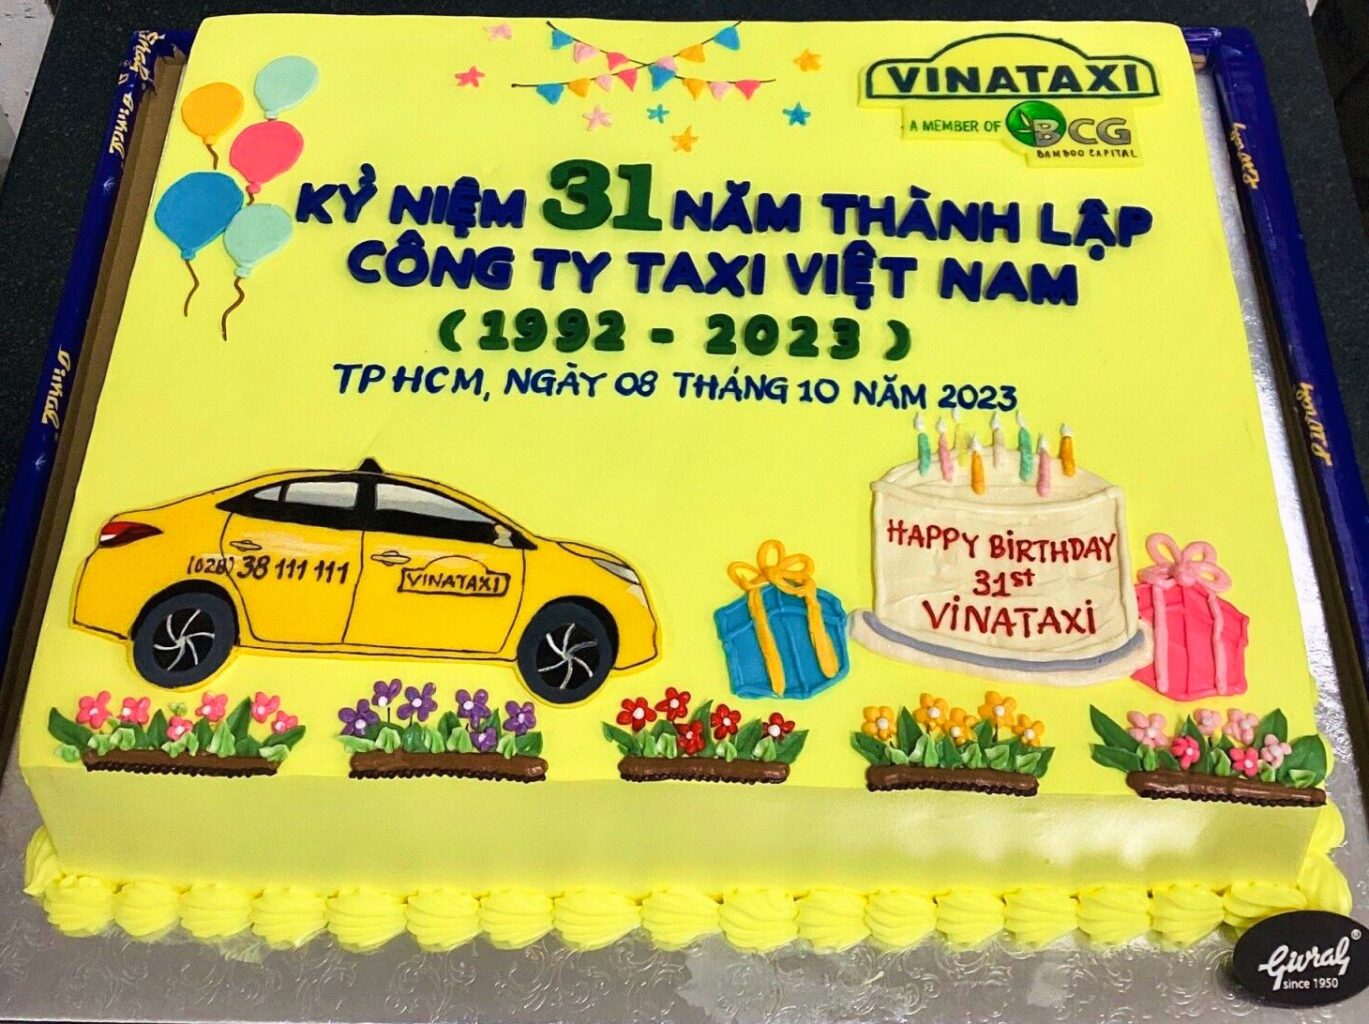 Vinataxi, taxi, kỷ niệm thành lập Vinataxi